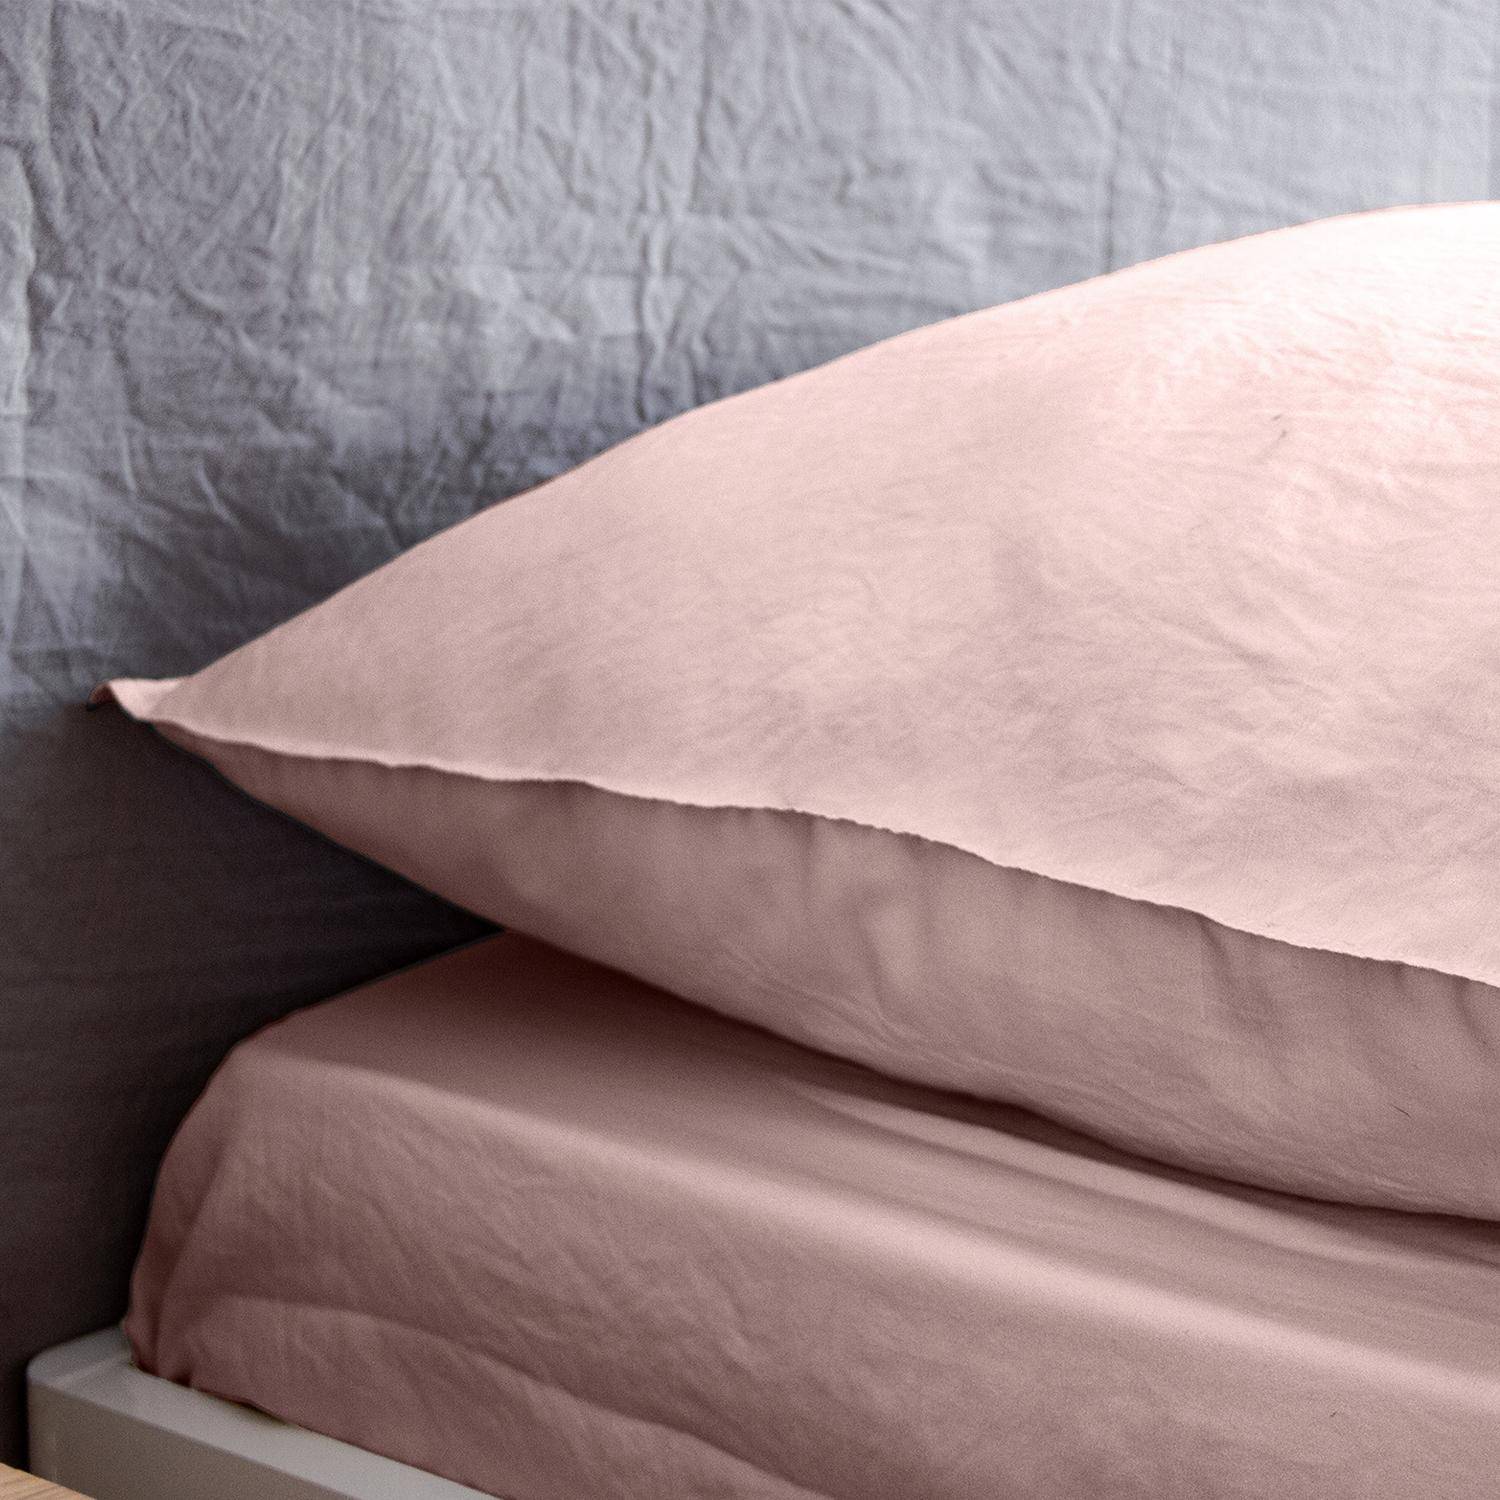 Bettwäsche-Set aus vorgewaschener Mikrofaser in rosa 240 x 220 cm für Doppelbetten, 1 Bettbezug und 2 Kissenbezüge,sweeek,Photo2